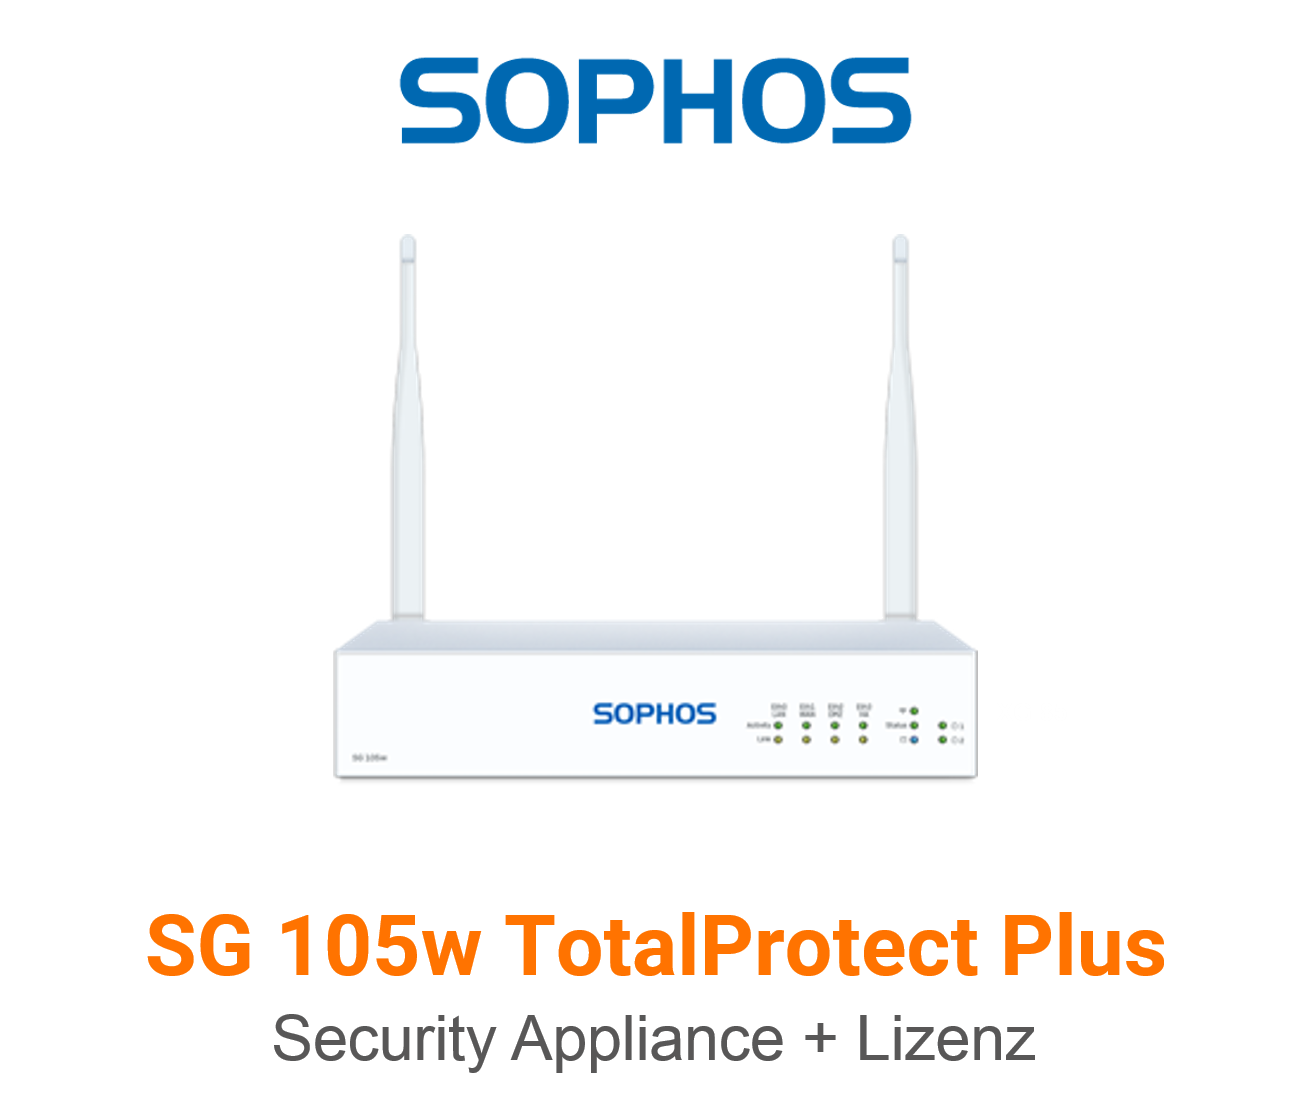 Sophos SG 105w TotalProtect Plus Bundle (Hardware + Lizenz)